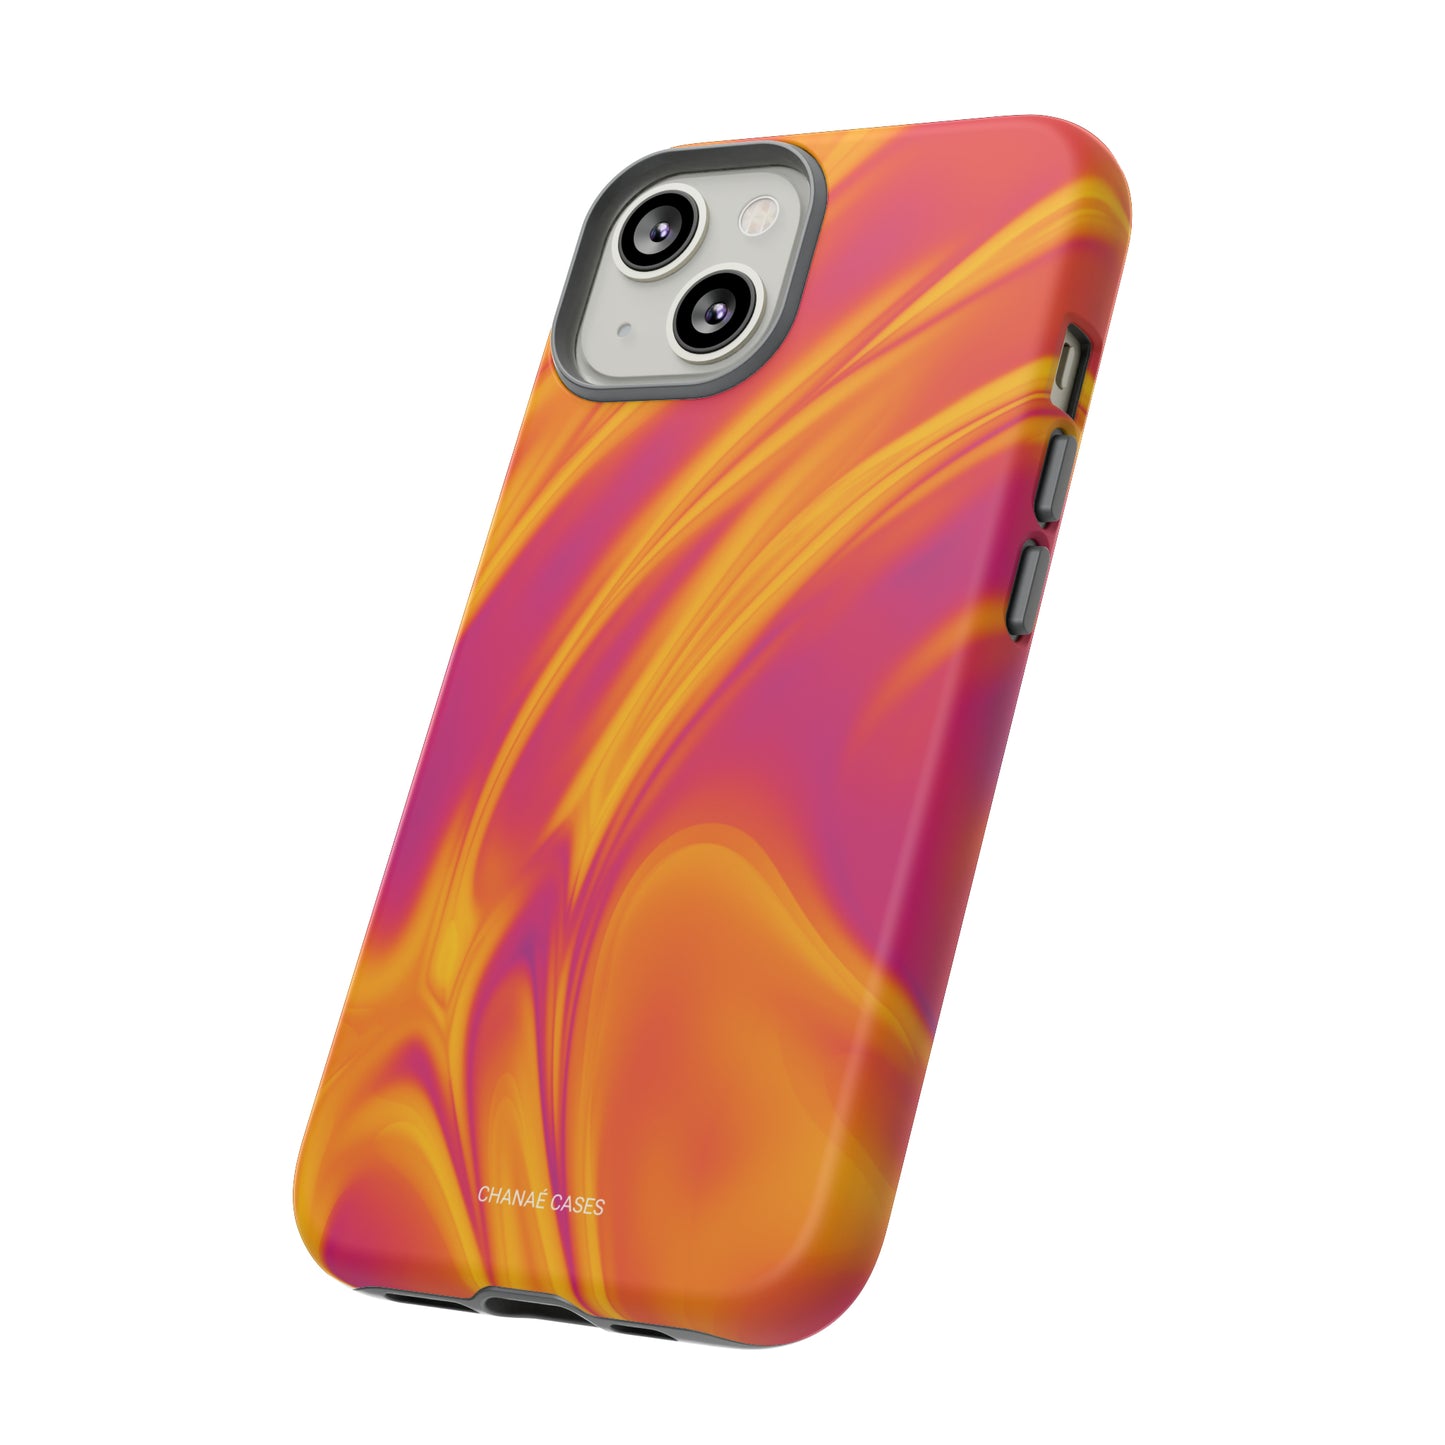 Retro Vibes iPhone "Tough" Case (Orange)